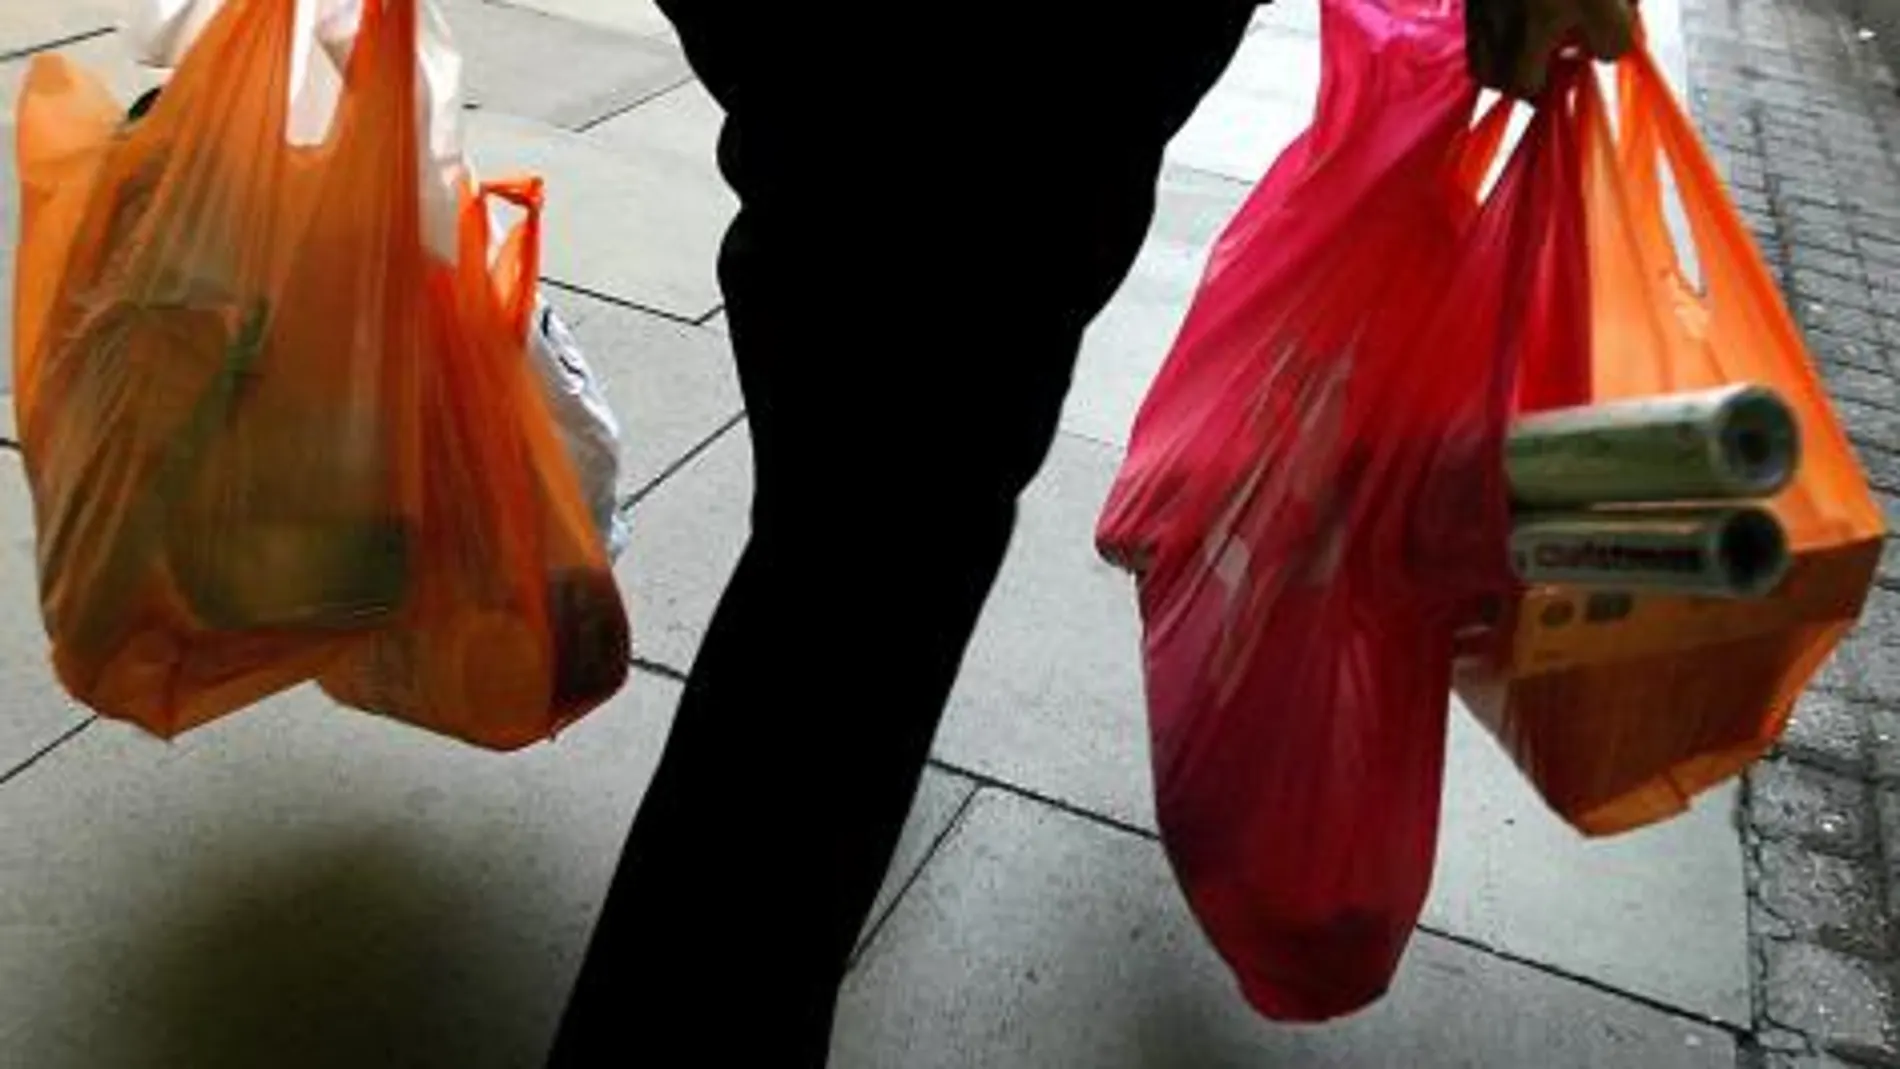 Una mujer lleva la compra en bolsas plásticas gratuitas